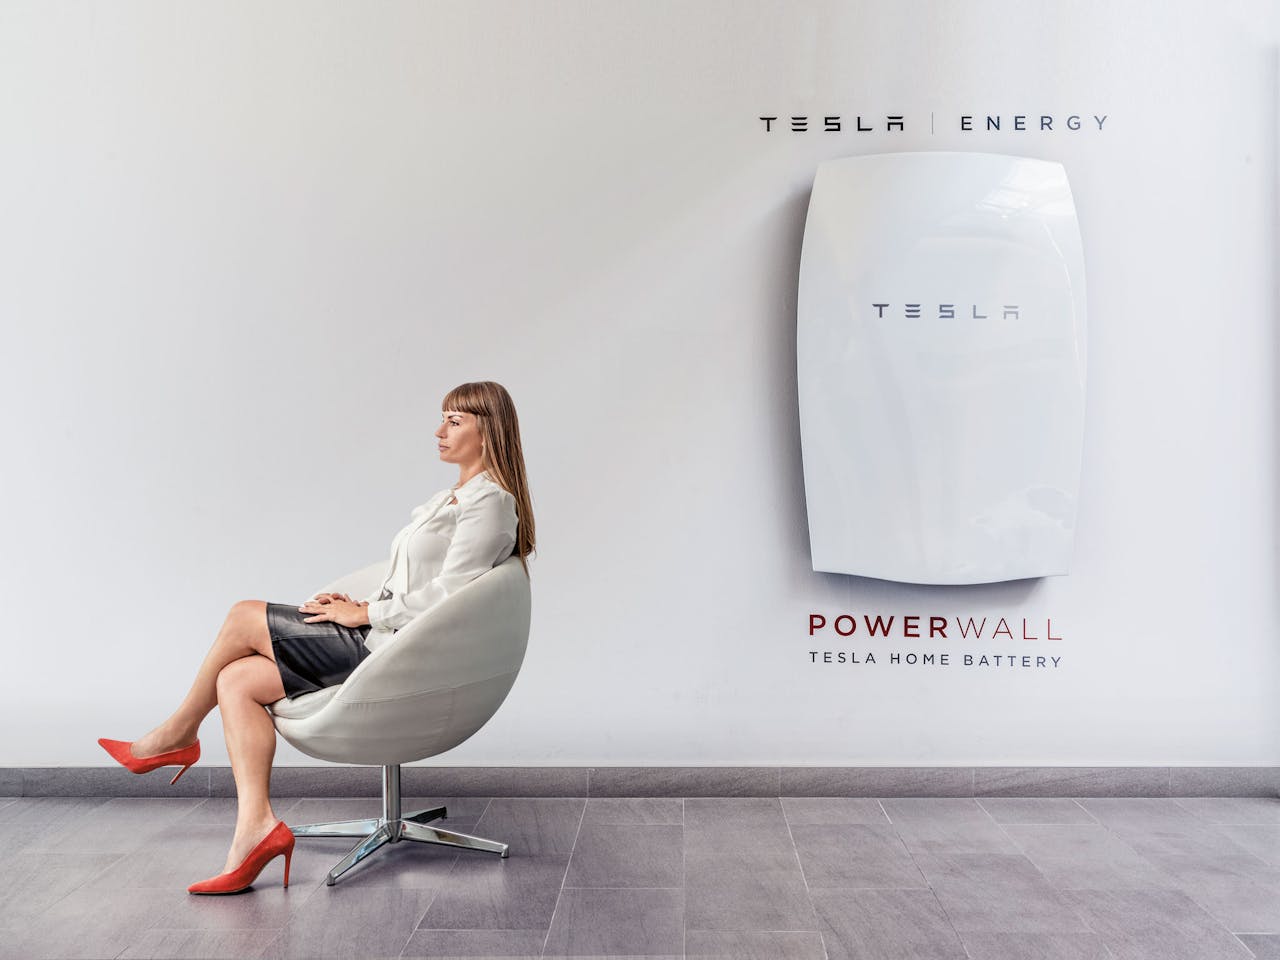 Kim Liebregts voor een Tesla Power Wall, een batterij voor in huis om bijvoorbeeld energie uit zonnepanelen mee op te slaan. (Foto: Martin Dijkstra)